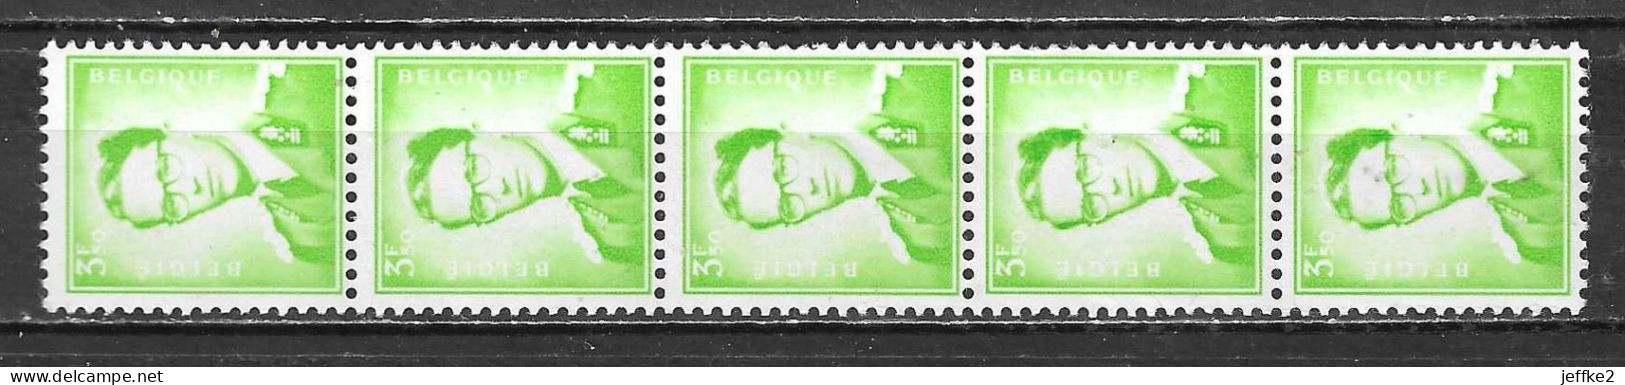 R33**  Baudouin Marchand - Bonne Valeur - MNH** - LOOK!!!! - Coil Stamps